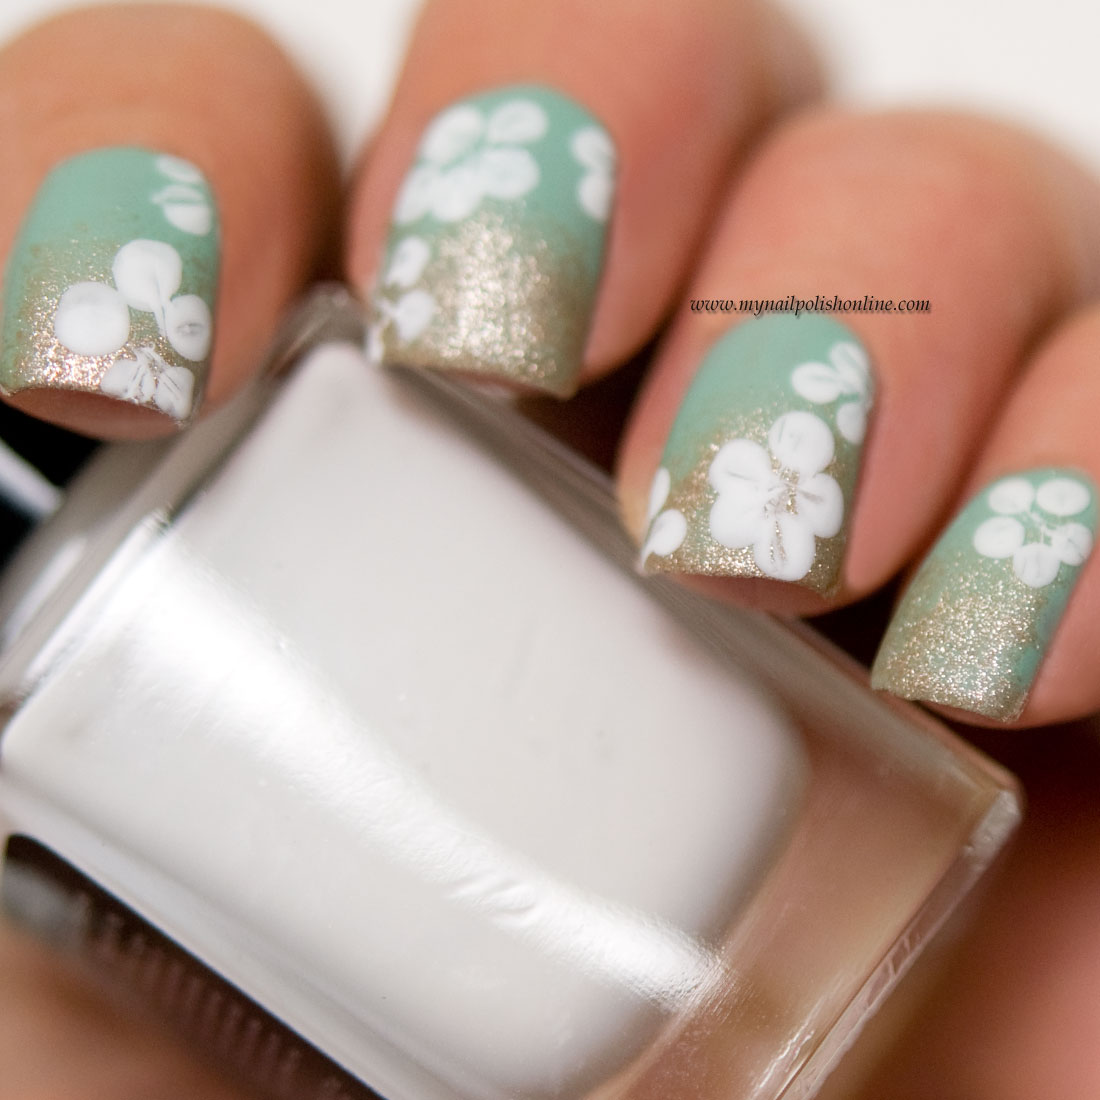 Floral nails - #midsummer - My Nail Polish Online